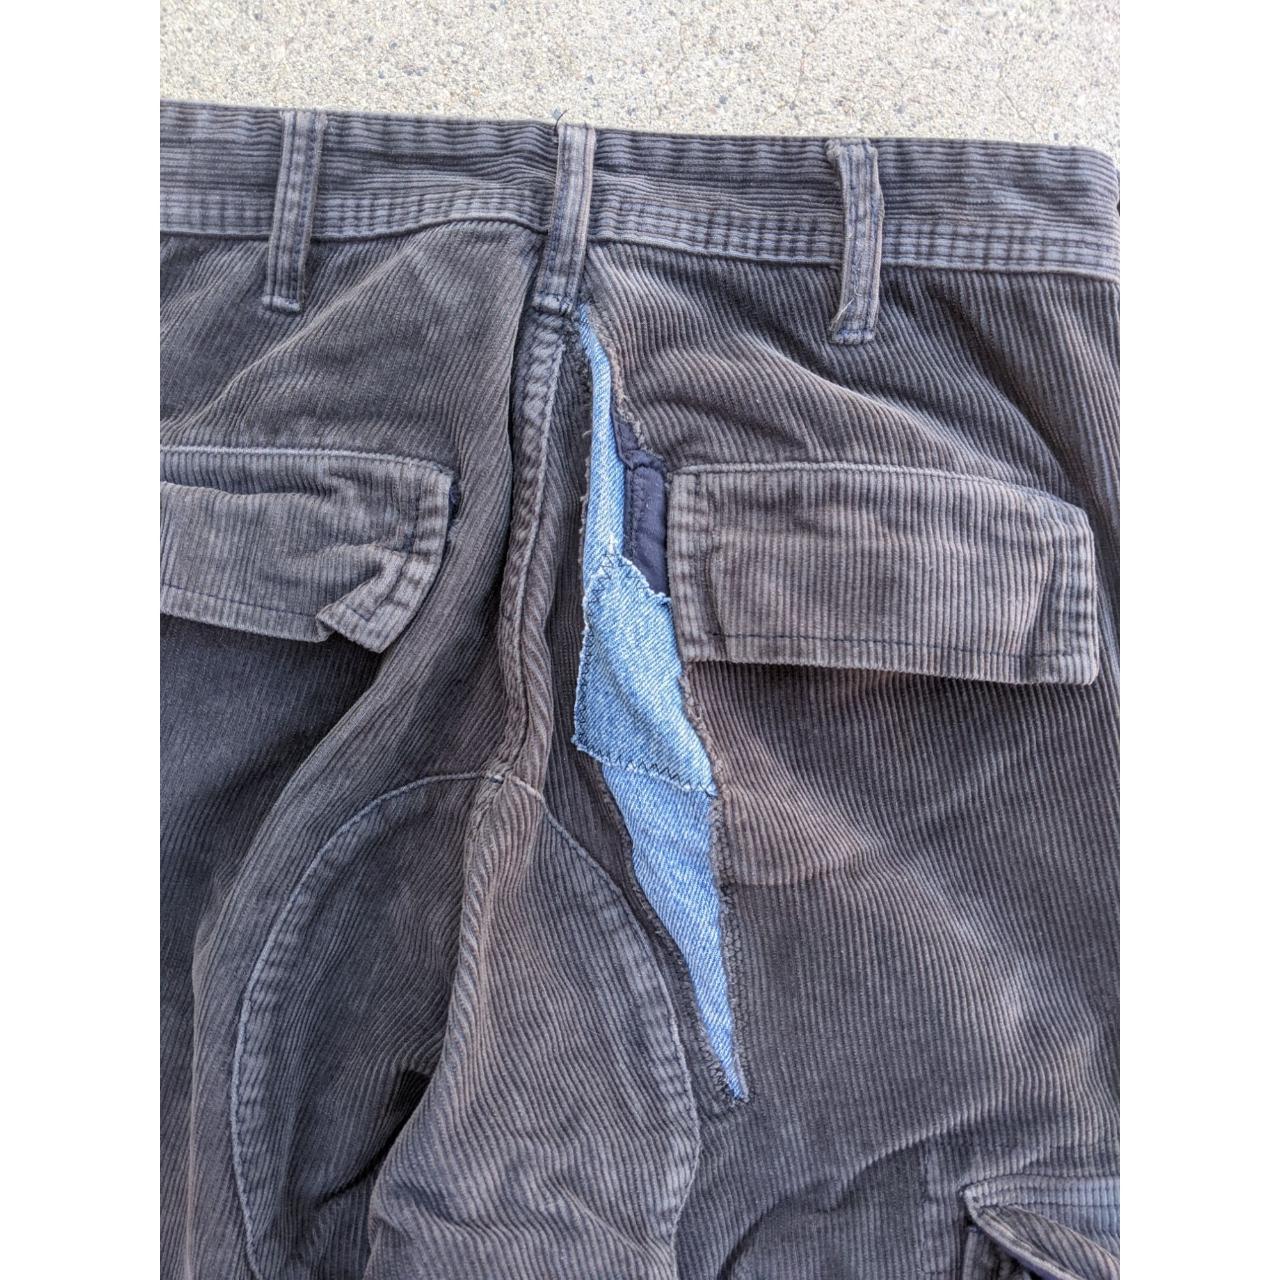 Dark Grey Corduroy Repaired Cargo Pants 26.5 x... - Depop